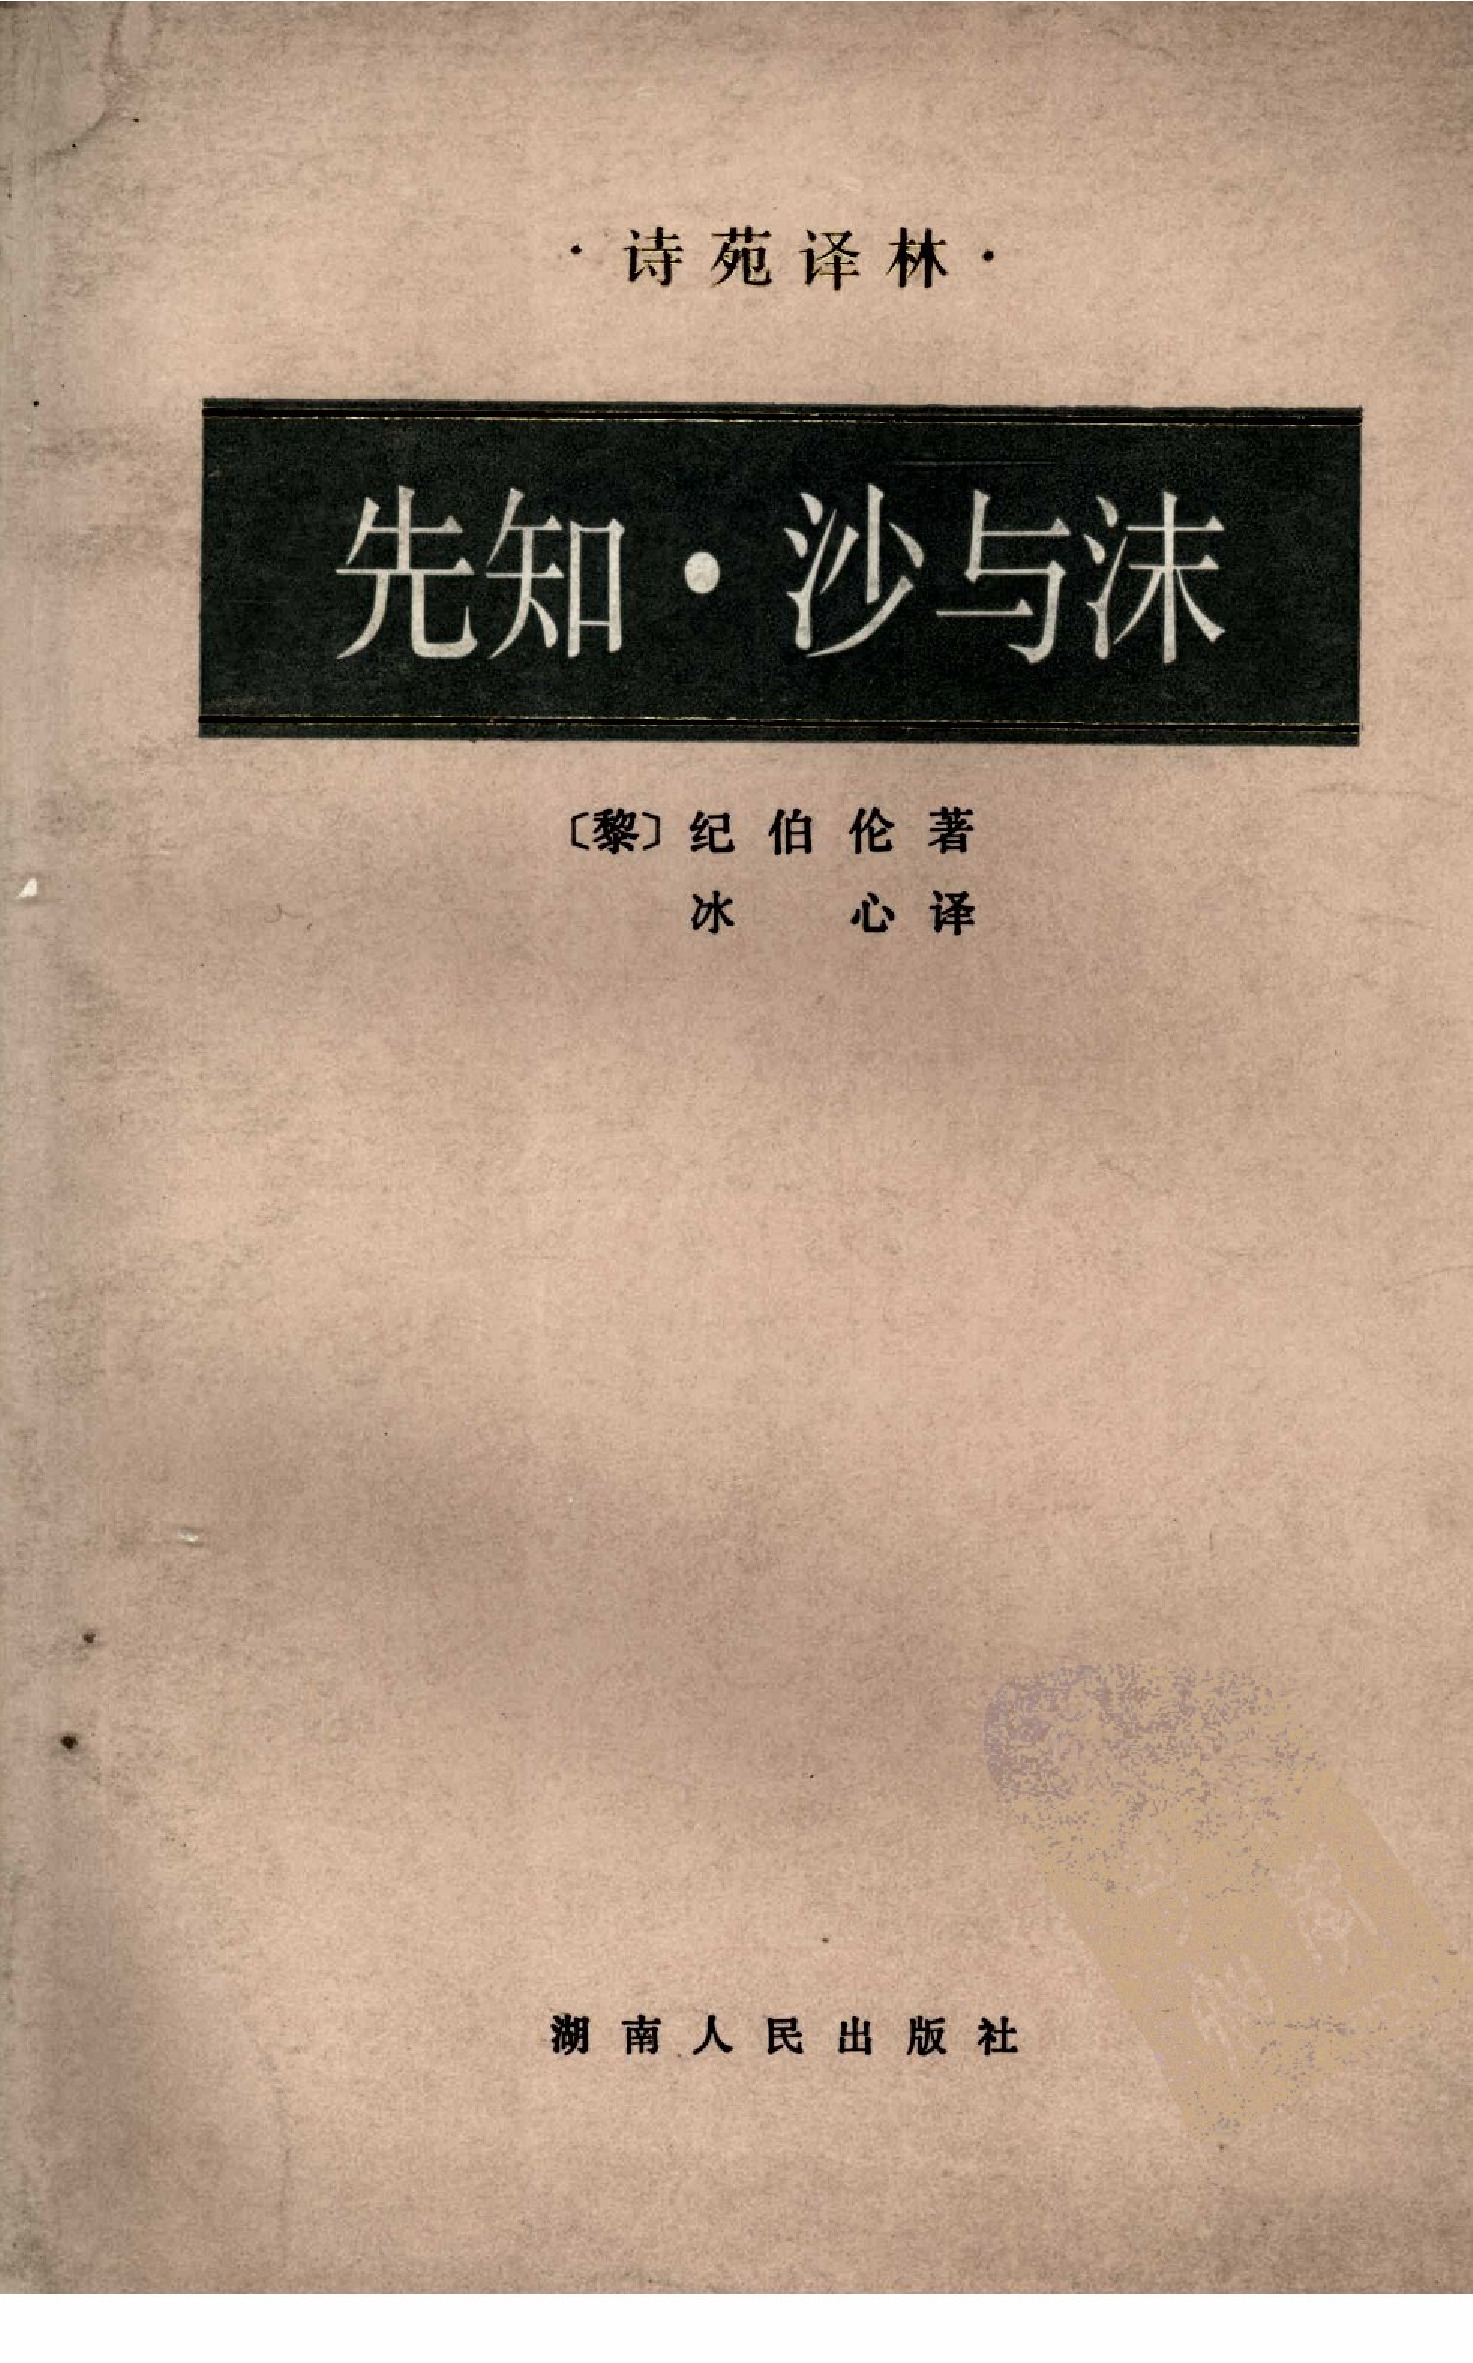 先知·沙与沫[黎]纪伯伦.冰心译.湖南人民出版社(1982)